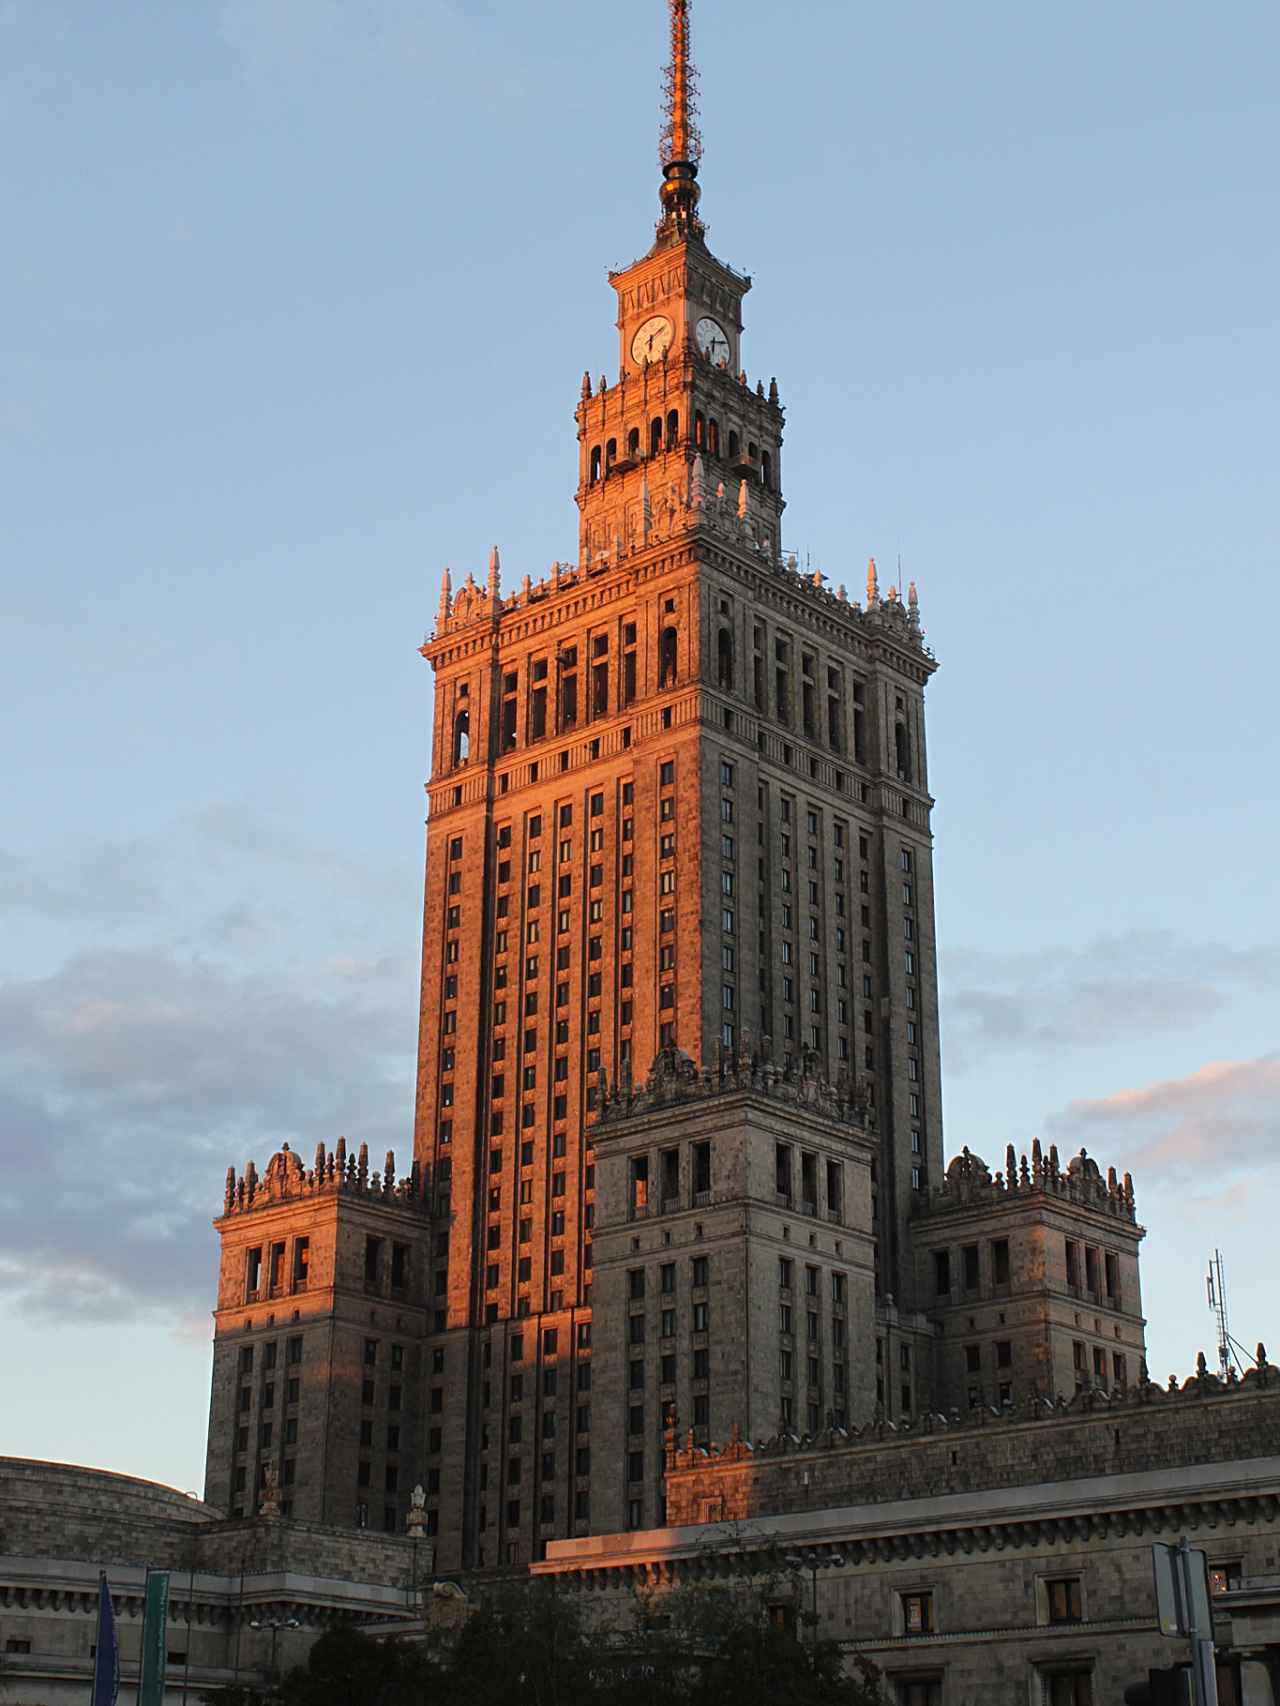 El Palacio es apodado 'Pekin' por sus siglas en en polaco.